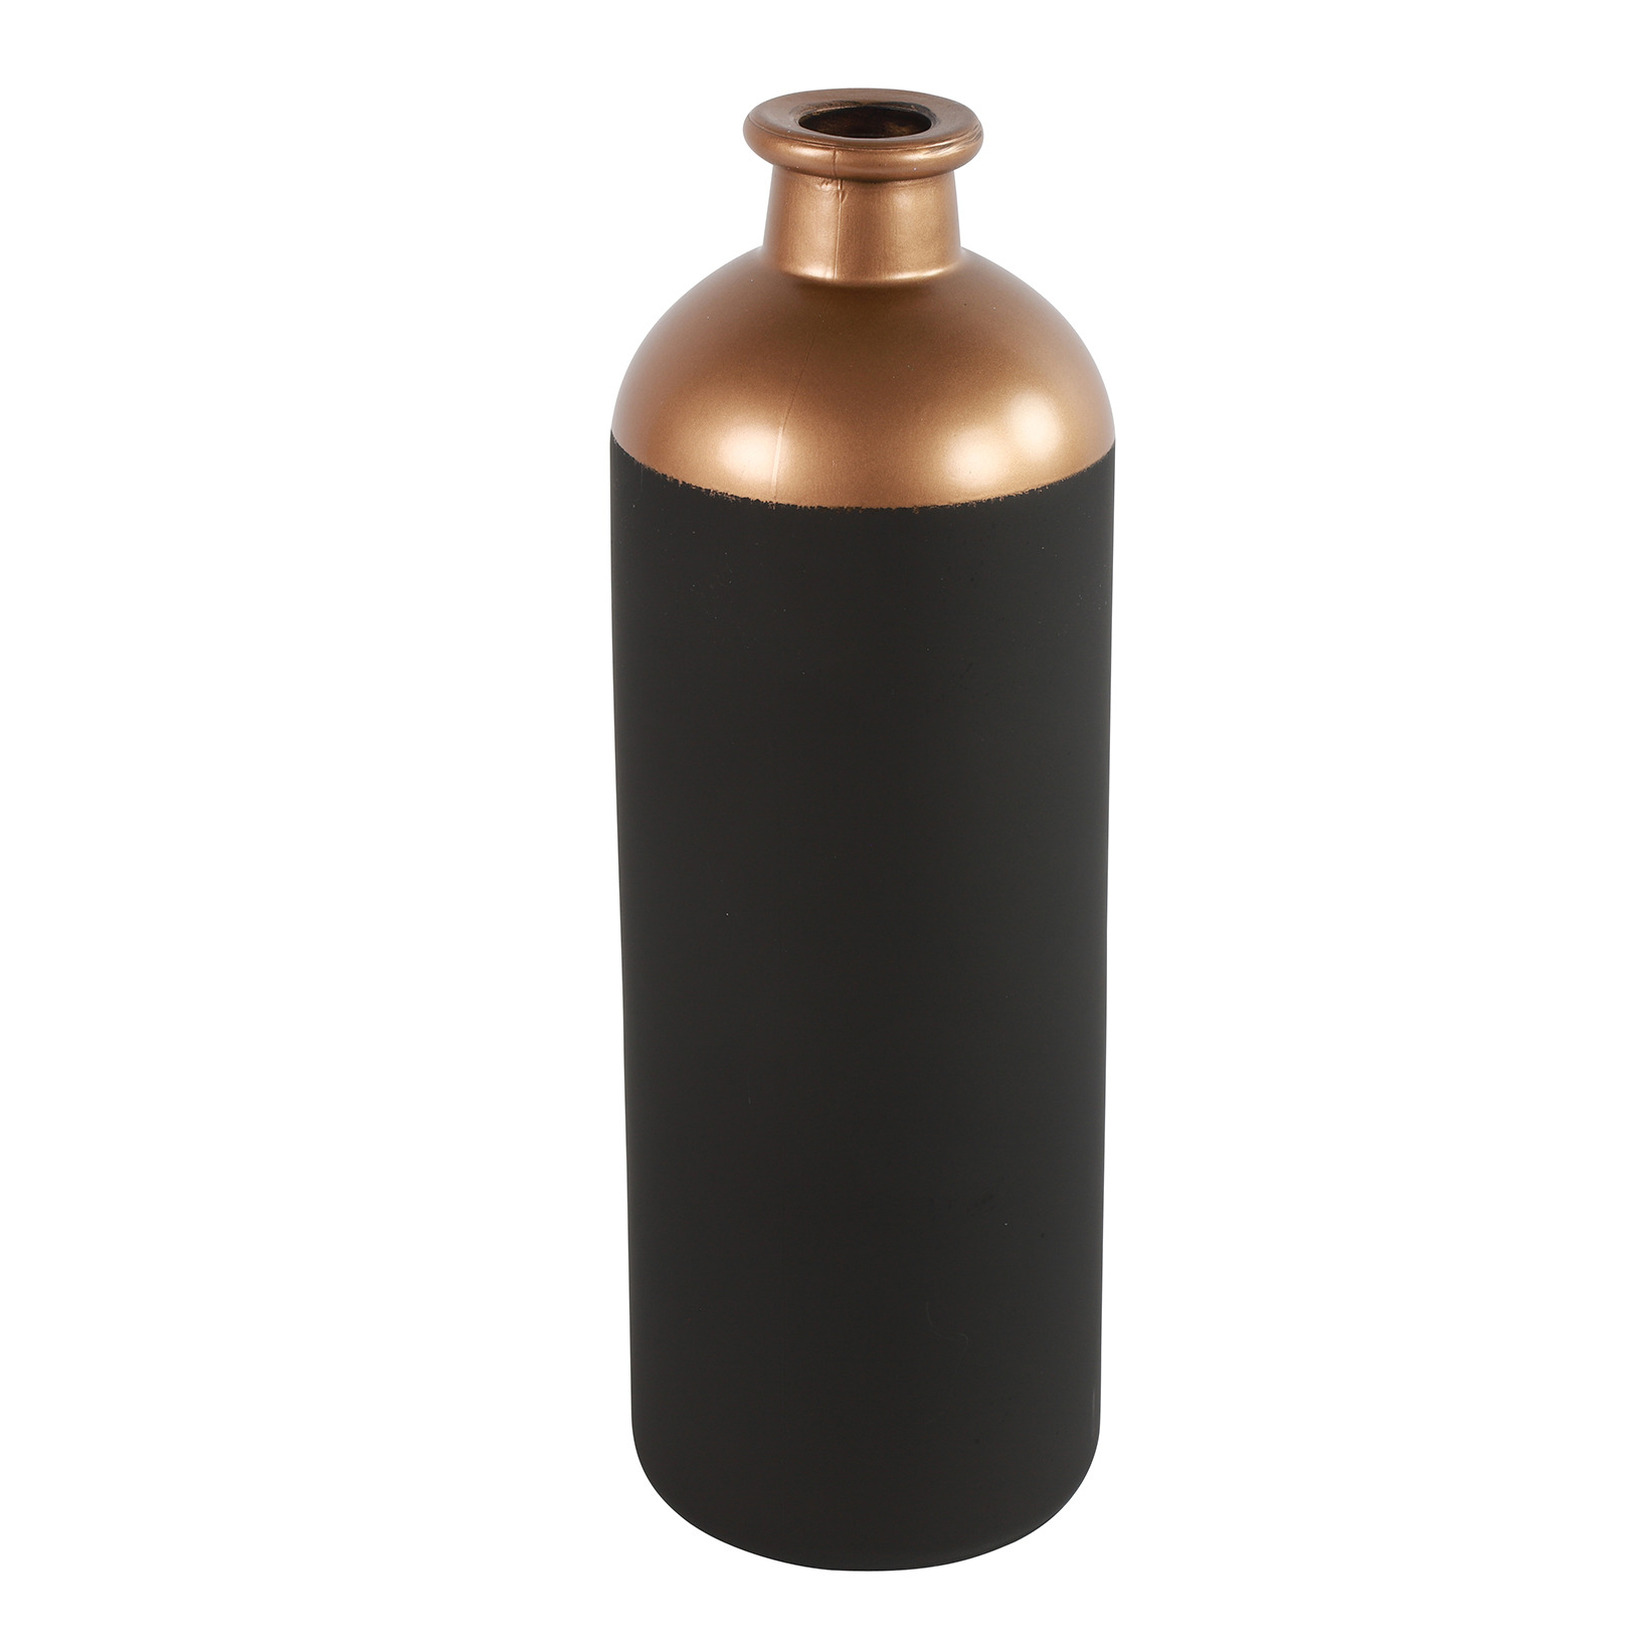 Countryfield Bloemen of deco vaas - zwart/koper - glas - luxe fles vorm - D11 x H33 cm -